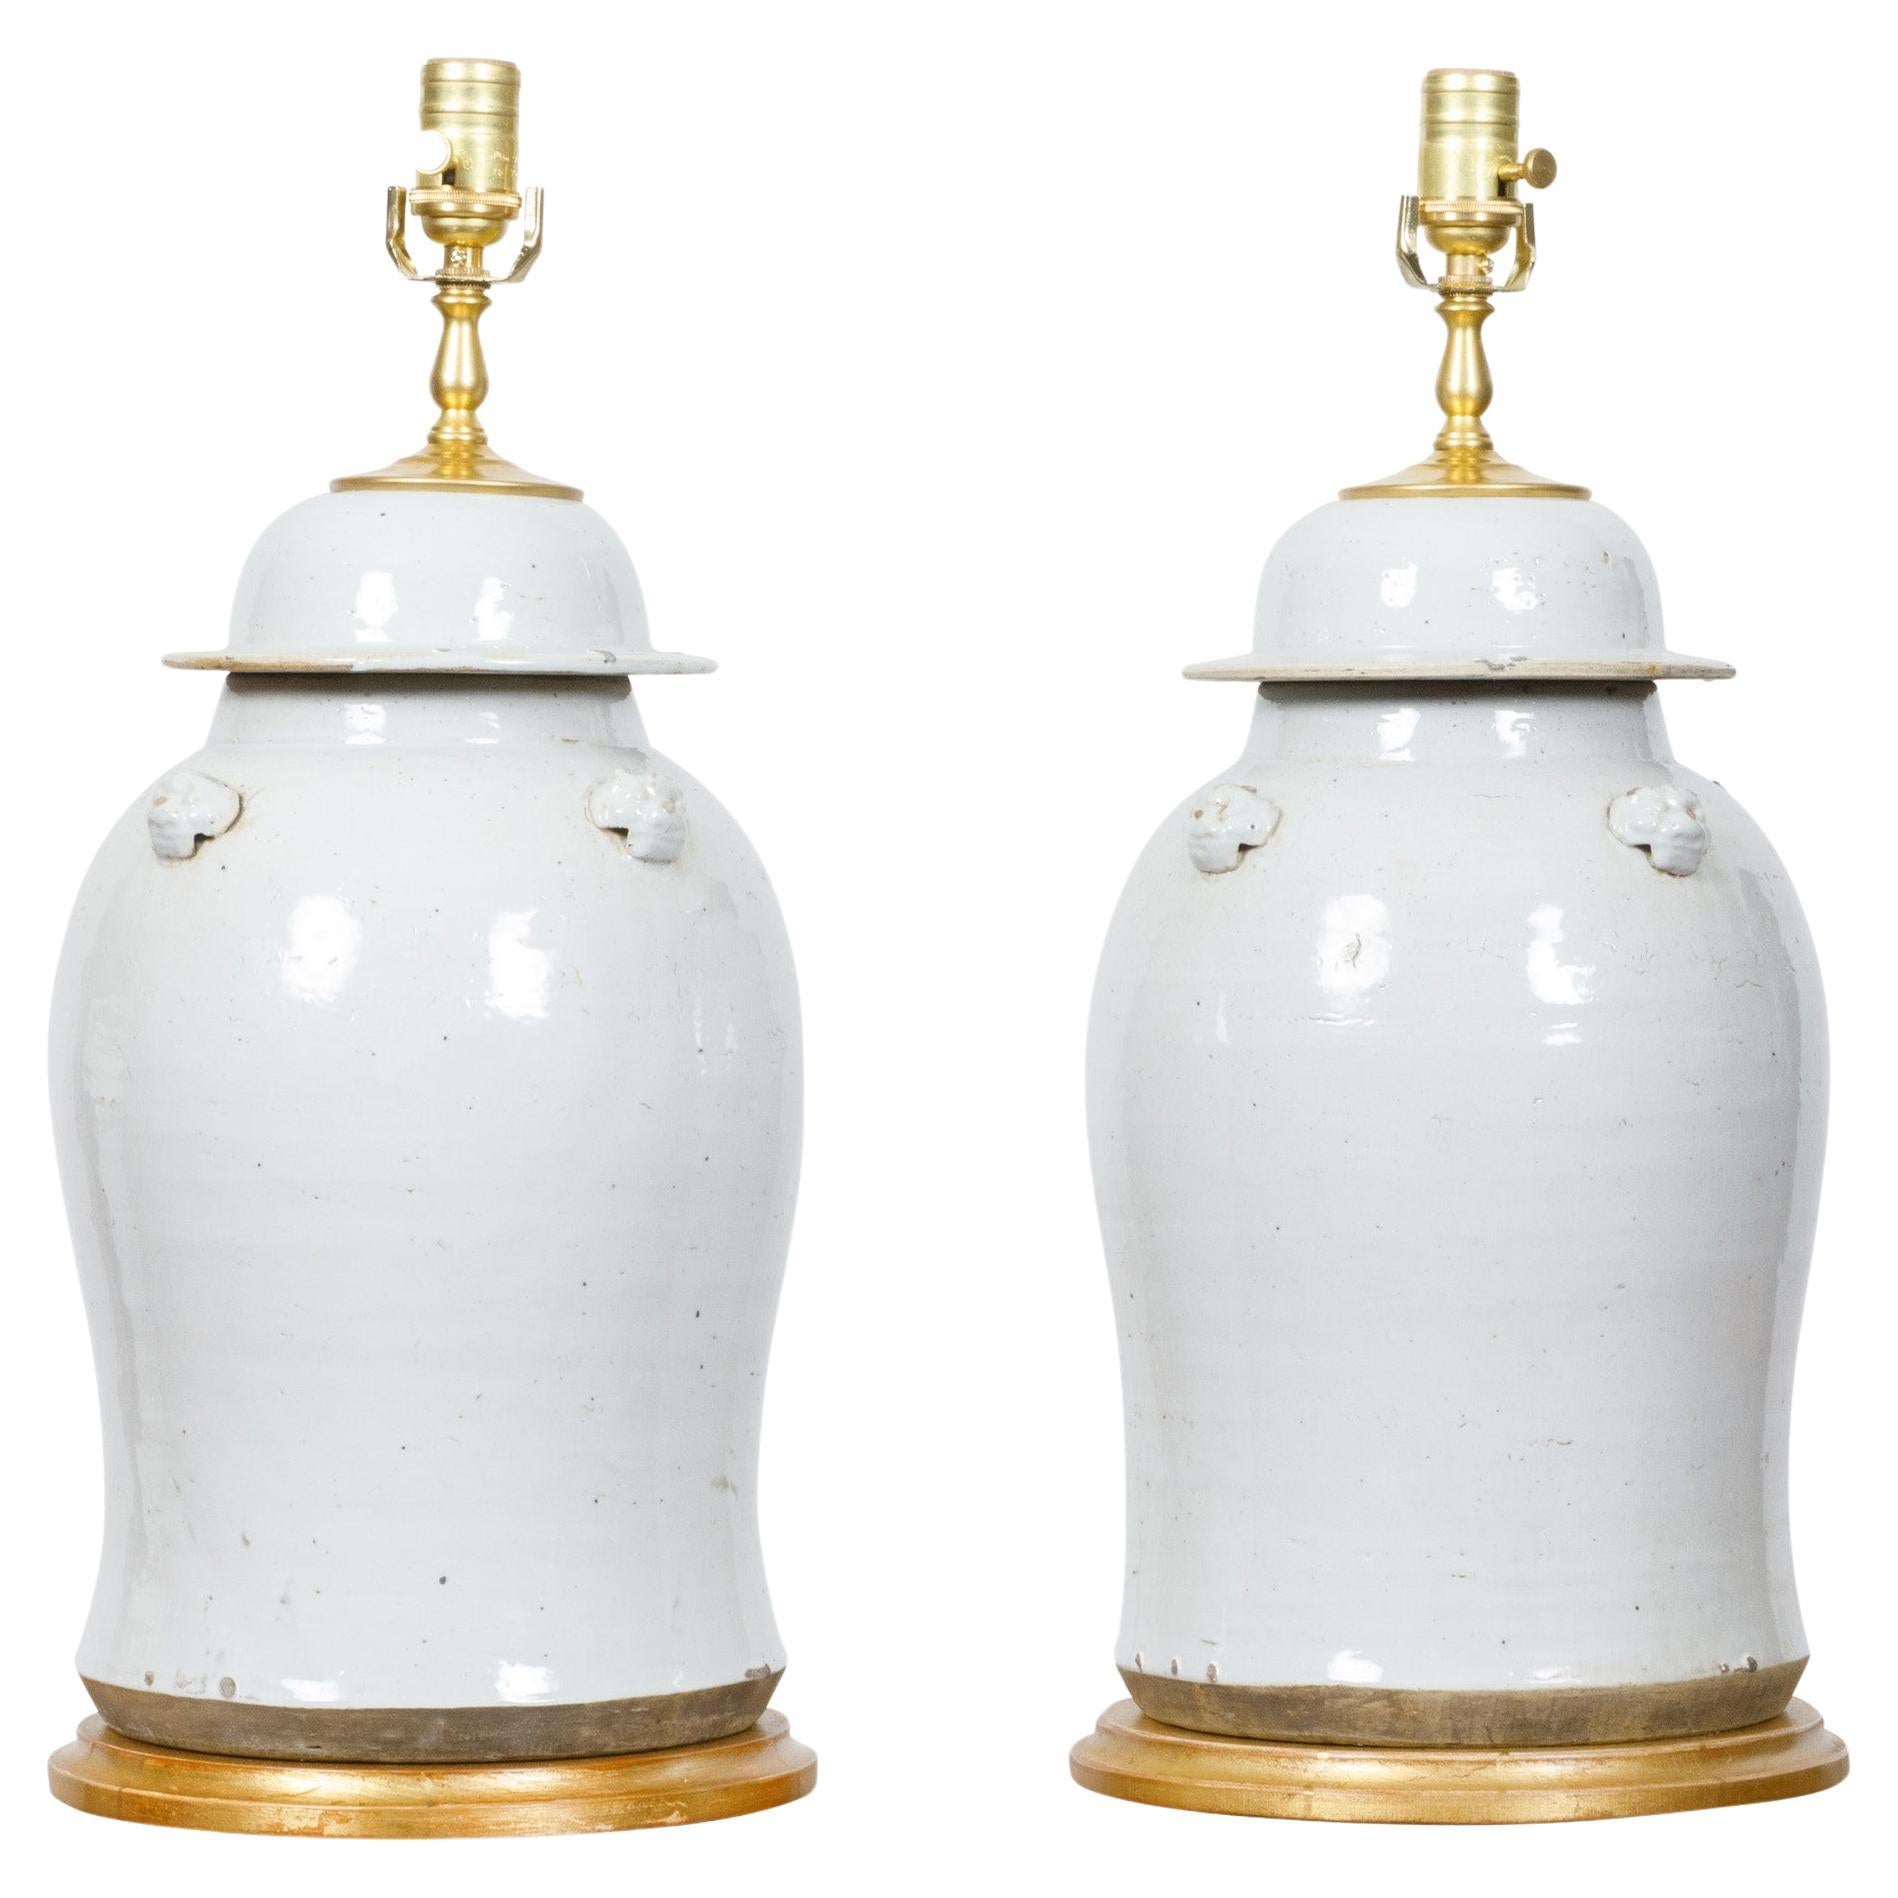 Paire d'urnes à couvercle en porcelaine blanche transformées en lampes de table câblées américaines sur bases dorées